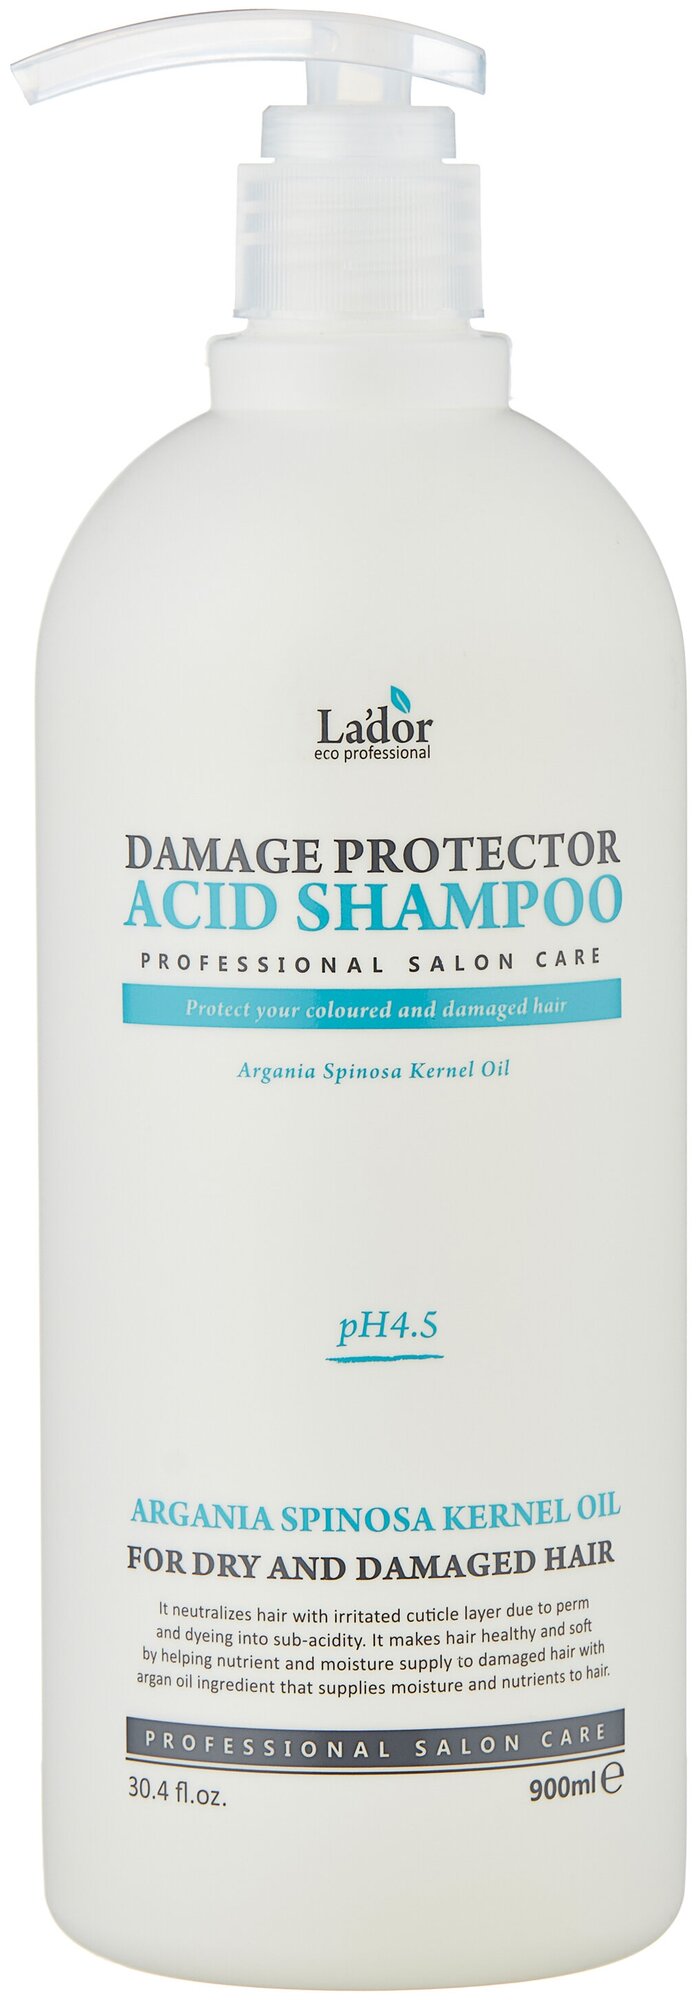 Шампунь Lador Damaged Protector Acid Shampoo д/волос с аргановым маслом 900мл